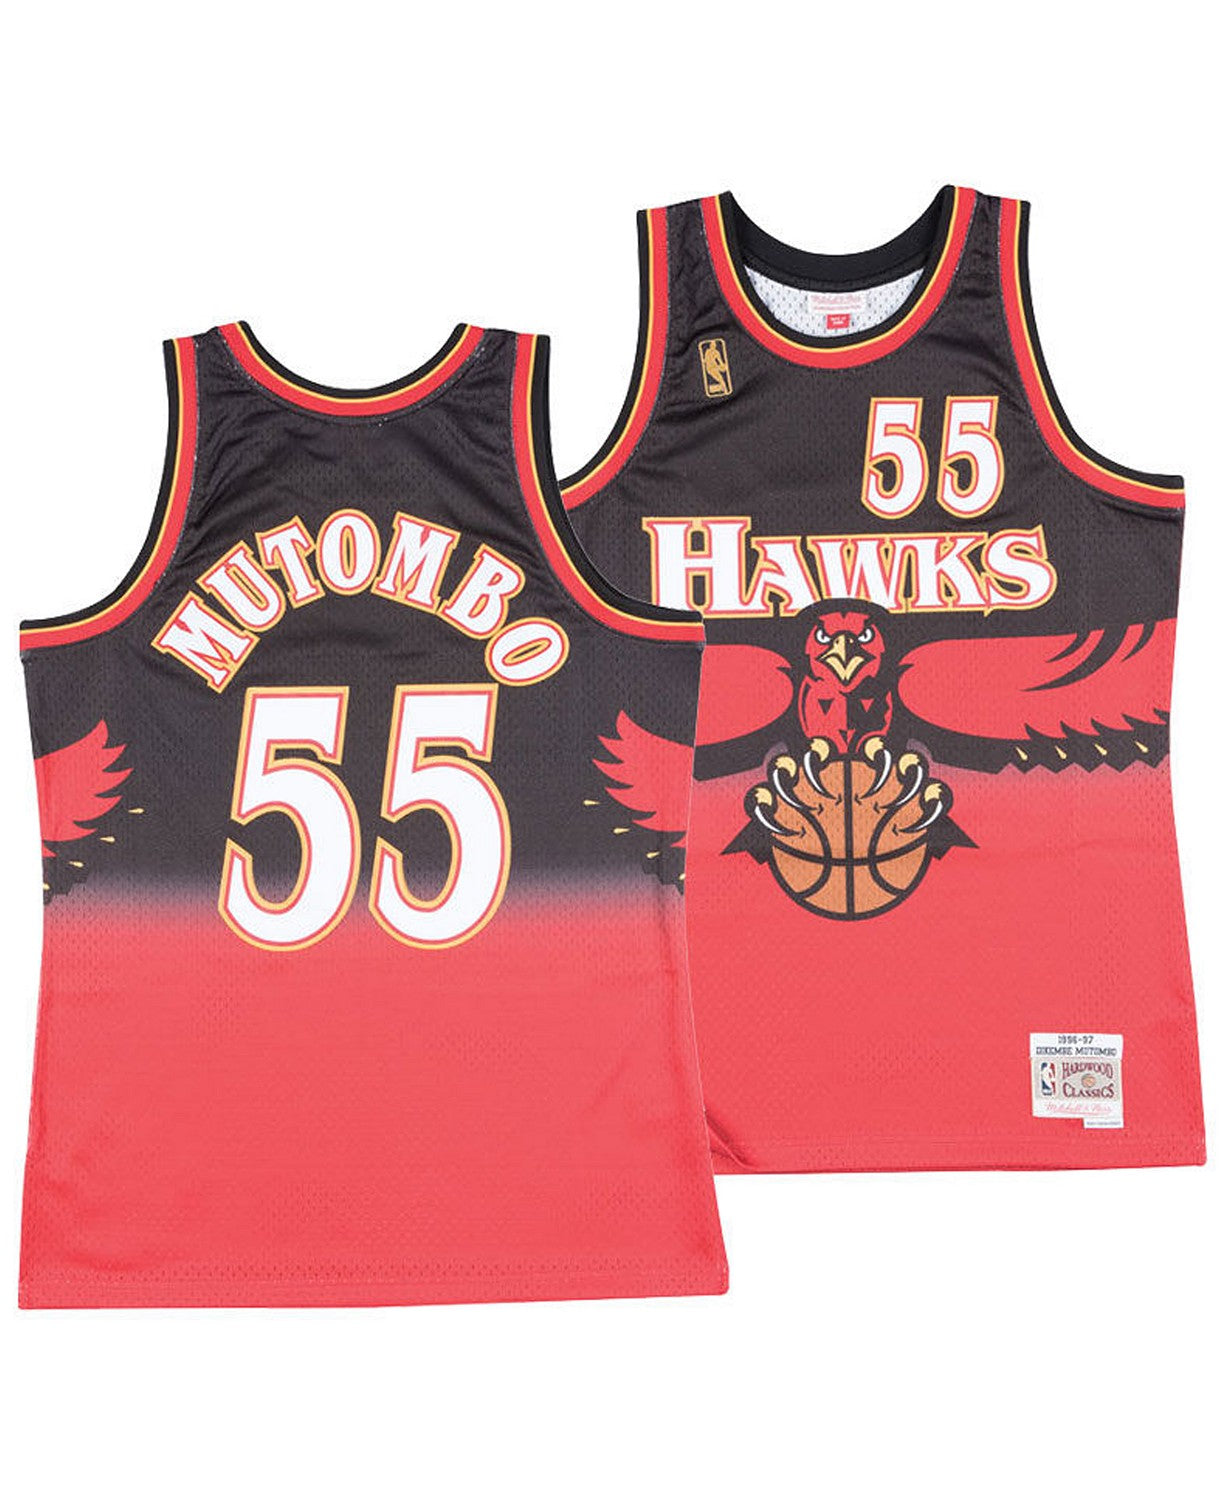 Mitchell & Ness Swingman Jersey Atlanta Hawks 1996-97 Dikembe Mutombo